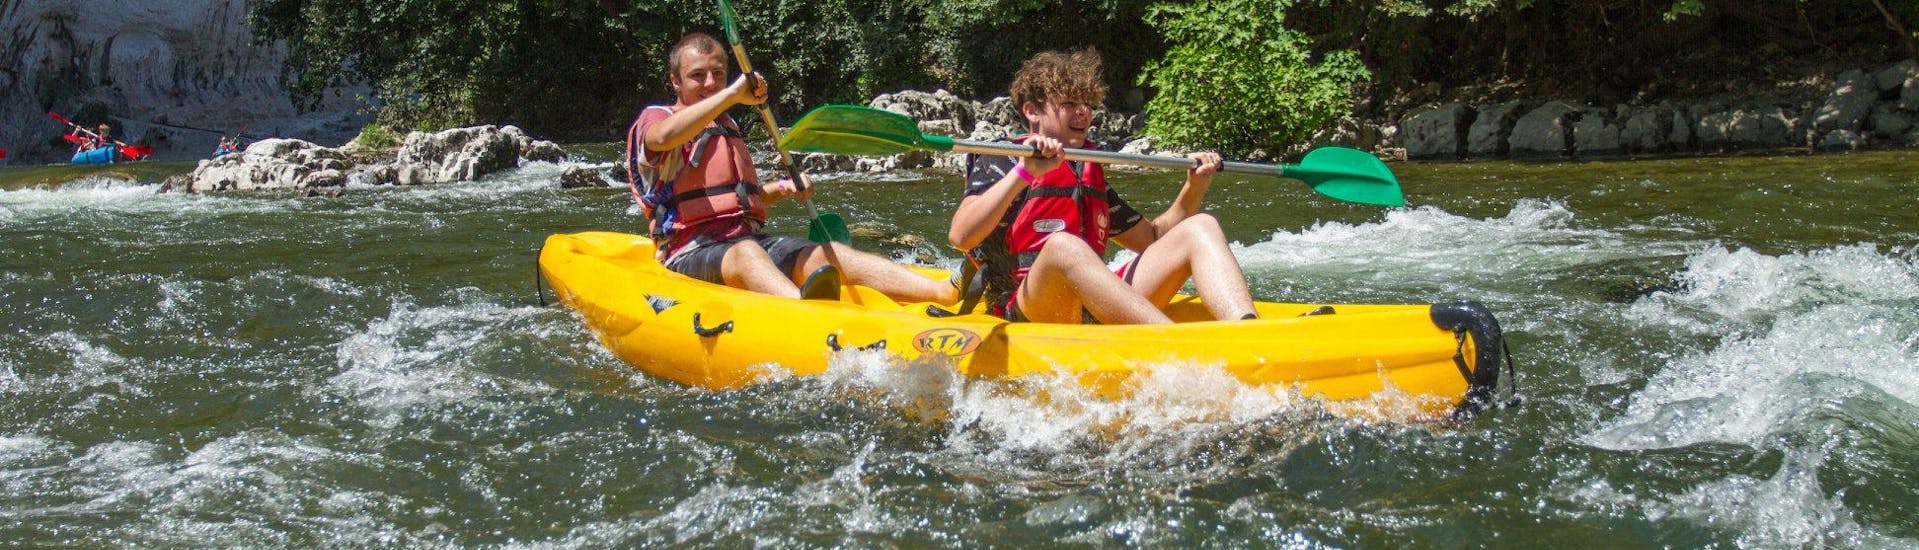 Zwei Abenteuerlustige haben Spaß beim Kanufahren auf dem Fluss Ardèche in Frankreich mit den Kanus von Viking Bateaux.